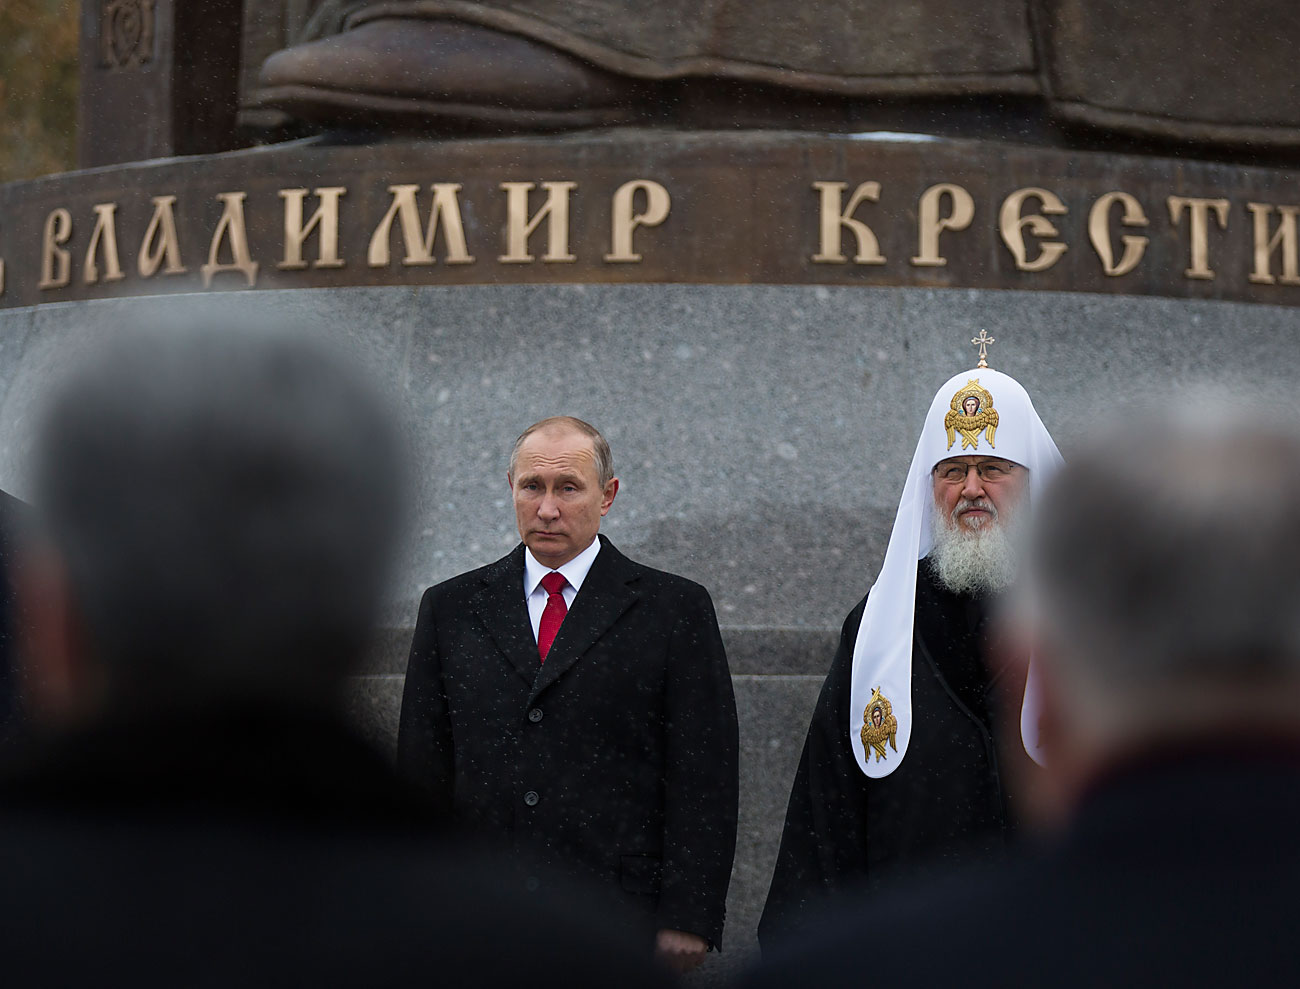 El presidente ruso Vladímir Putin junto al Patriarca Kirill durante la ceremonia de inauguración del monumento a Vladímir I de Kiev, el primer zar que se convirtió al cristianismo en el siglo X, cerca del Kremlin. La ceremonia tuvo lugar el 4 de noviembre, Día de la Unidad Nacional.